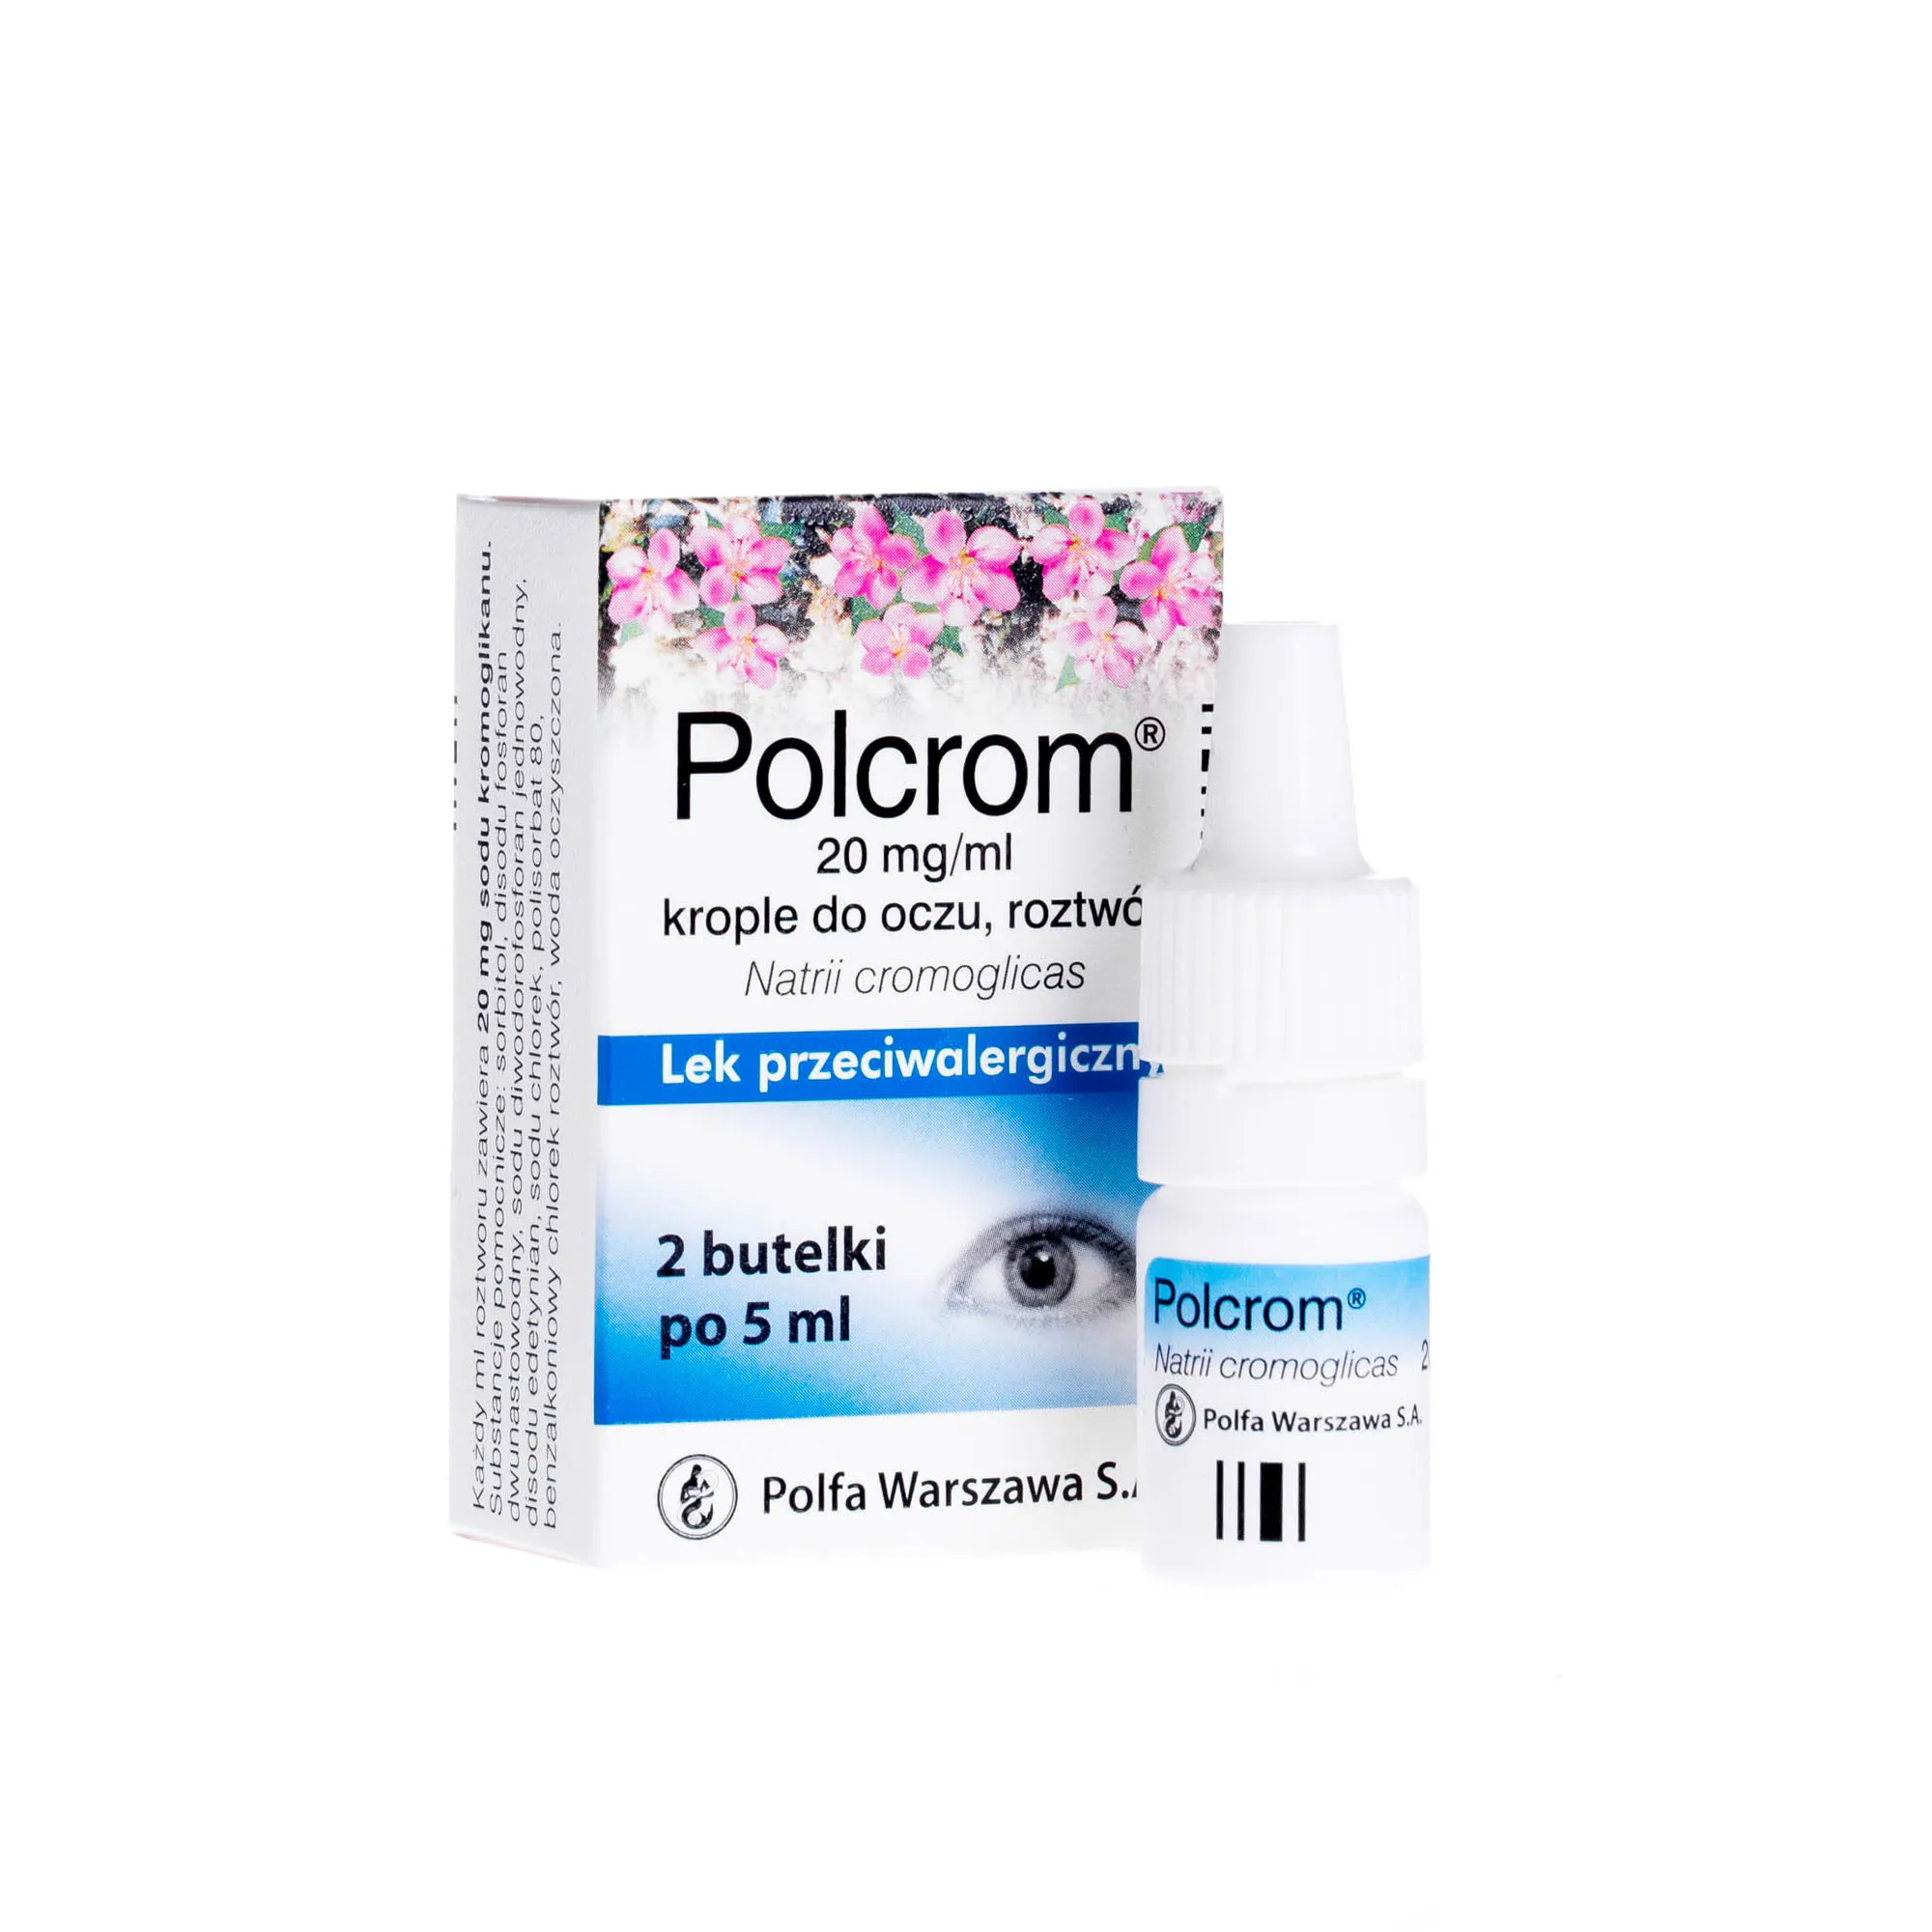 Polcrom, 20 mg/ml, krople do oczu, roztwór, 2 butelki po 5 ml 